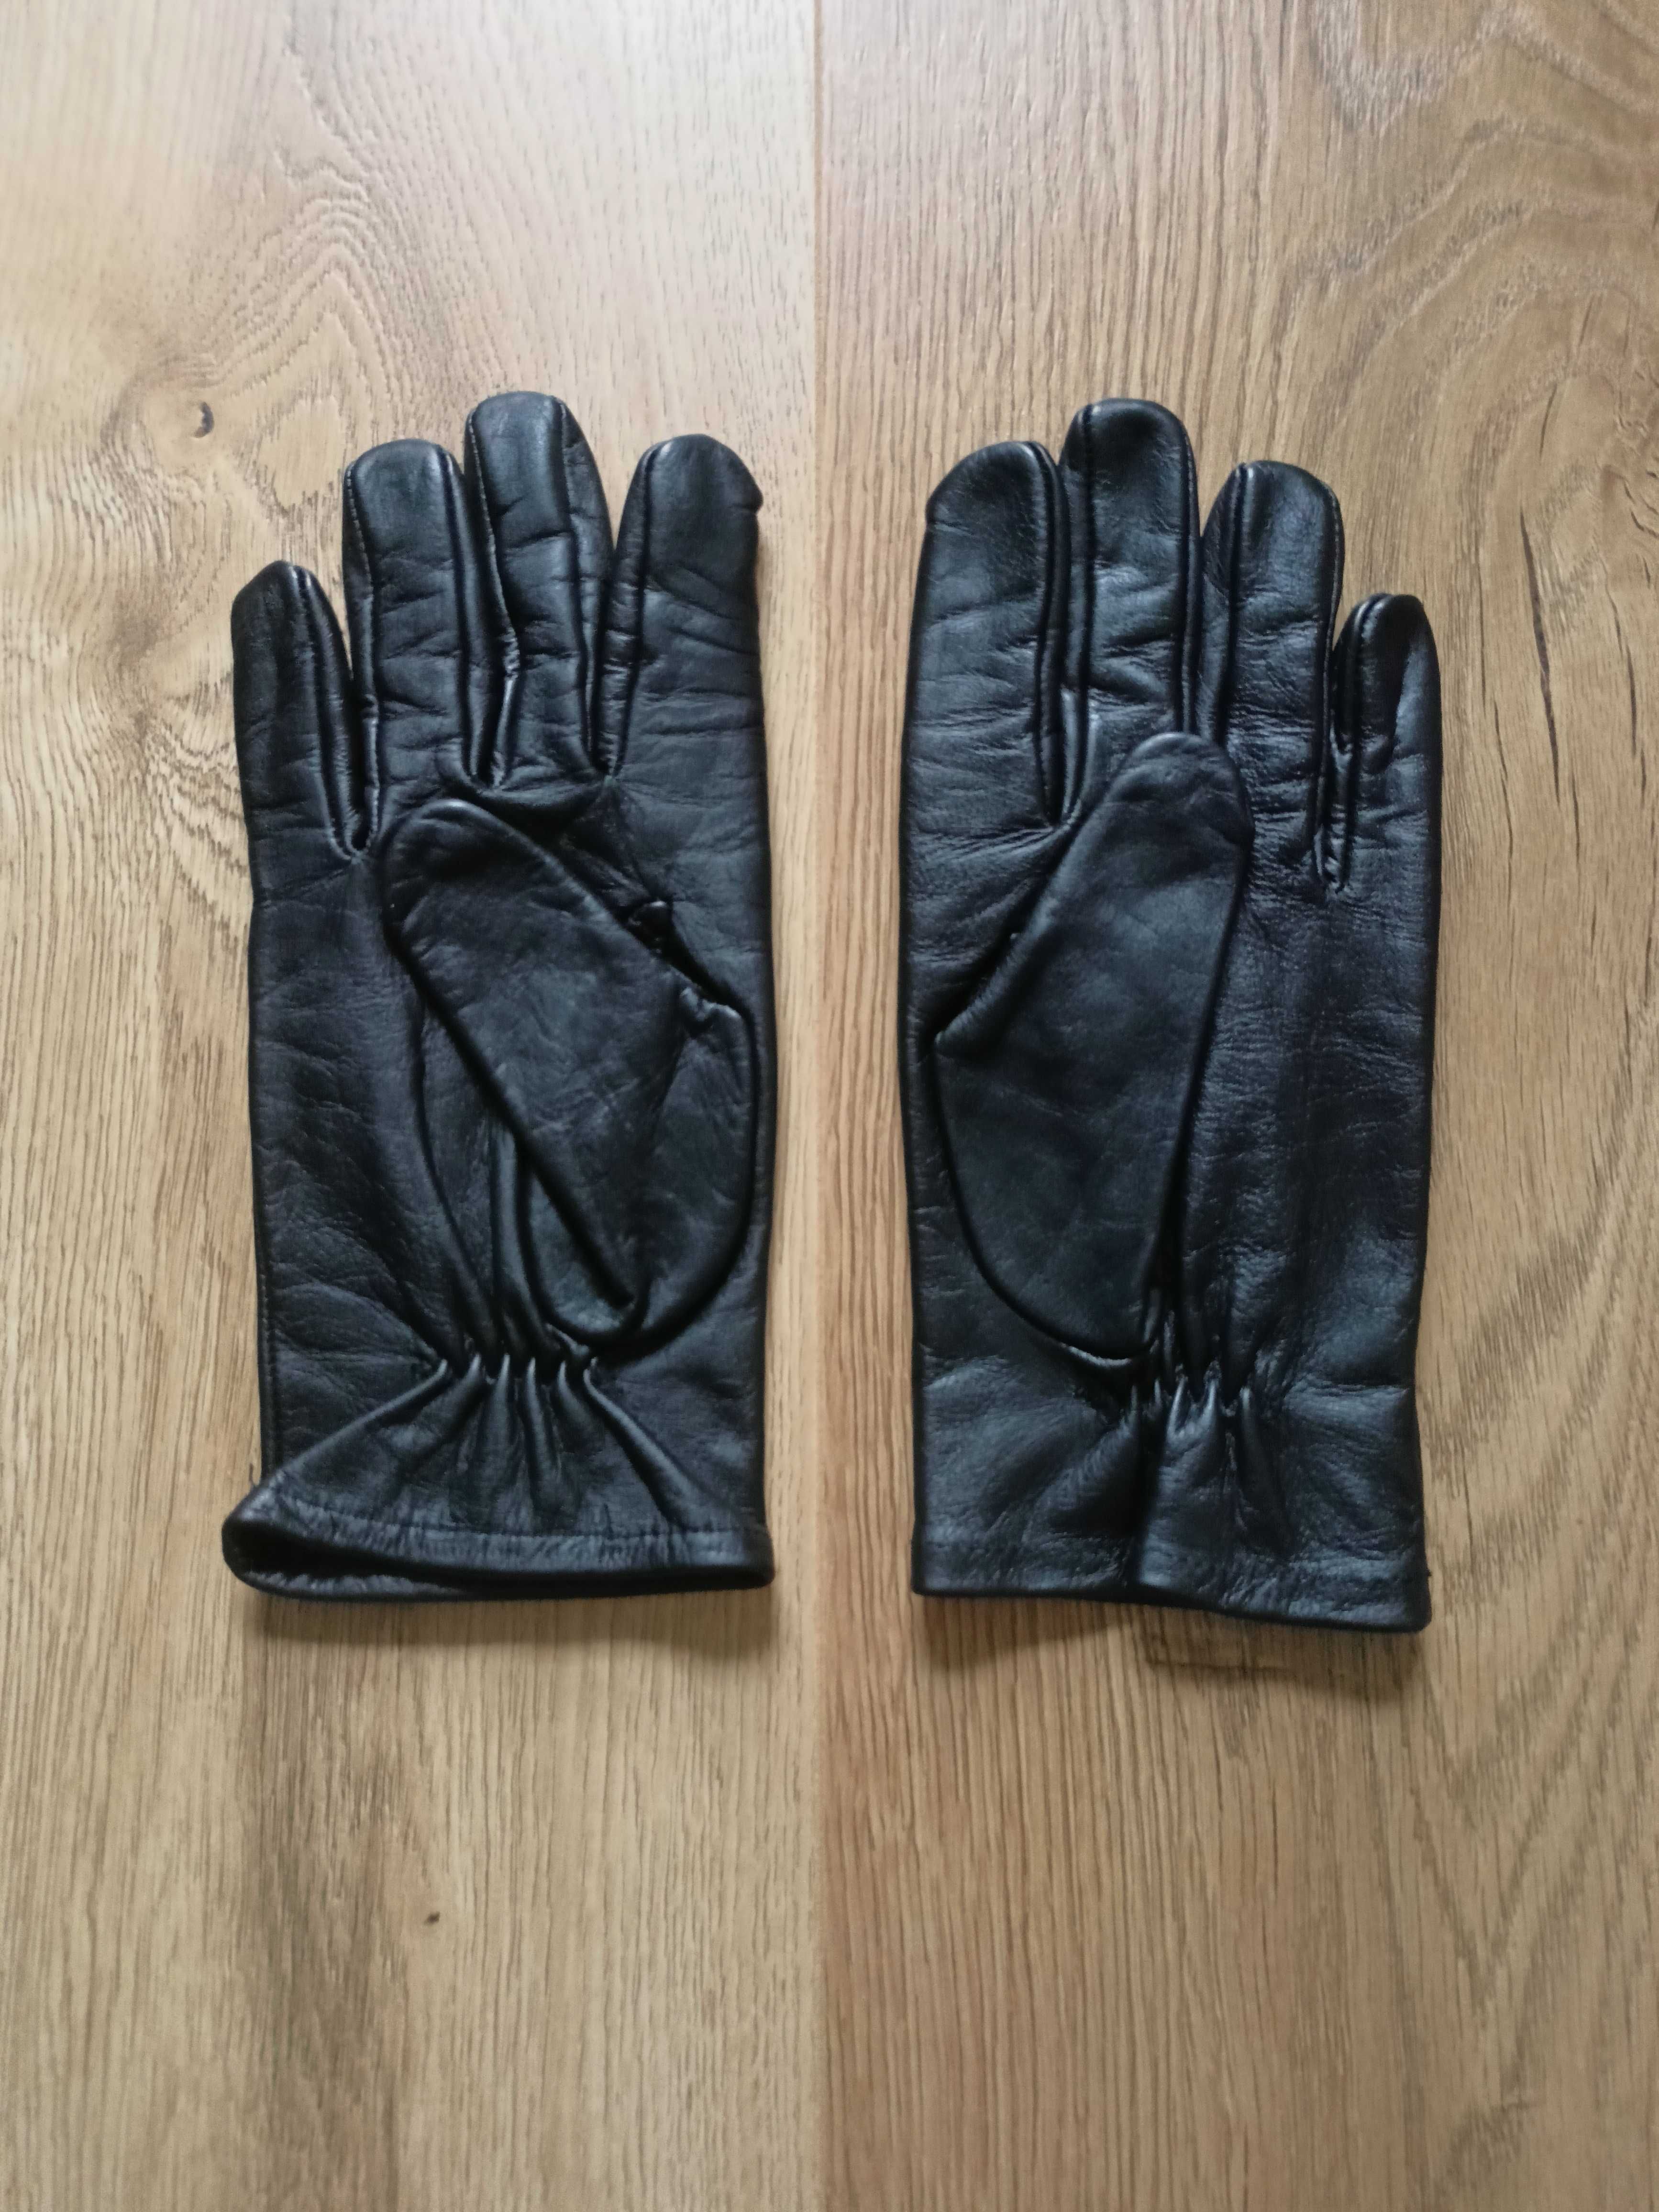 Rękawiczki skórzane letnie do munduru galowego wzór 962 rozmiar 21 (S)